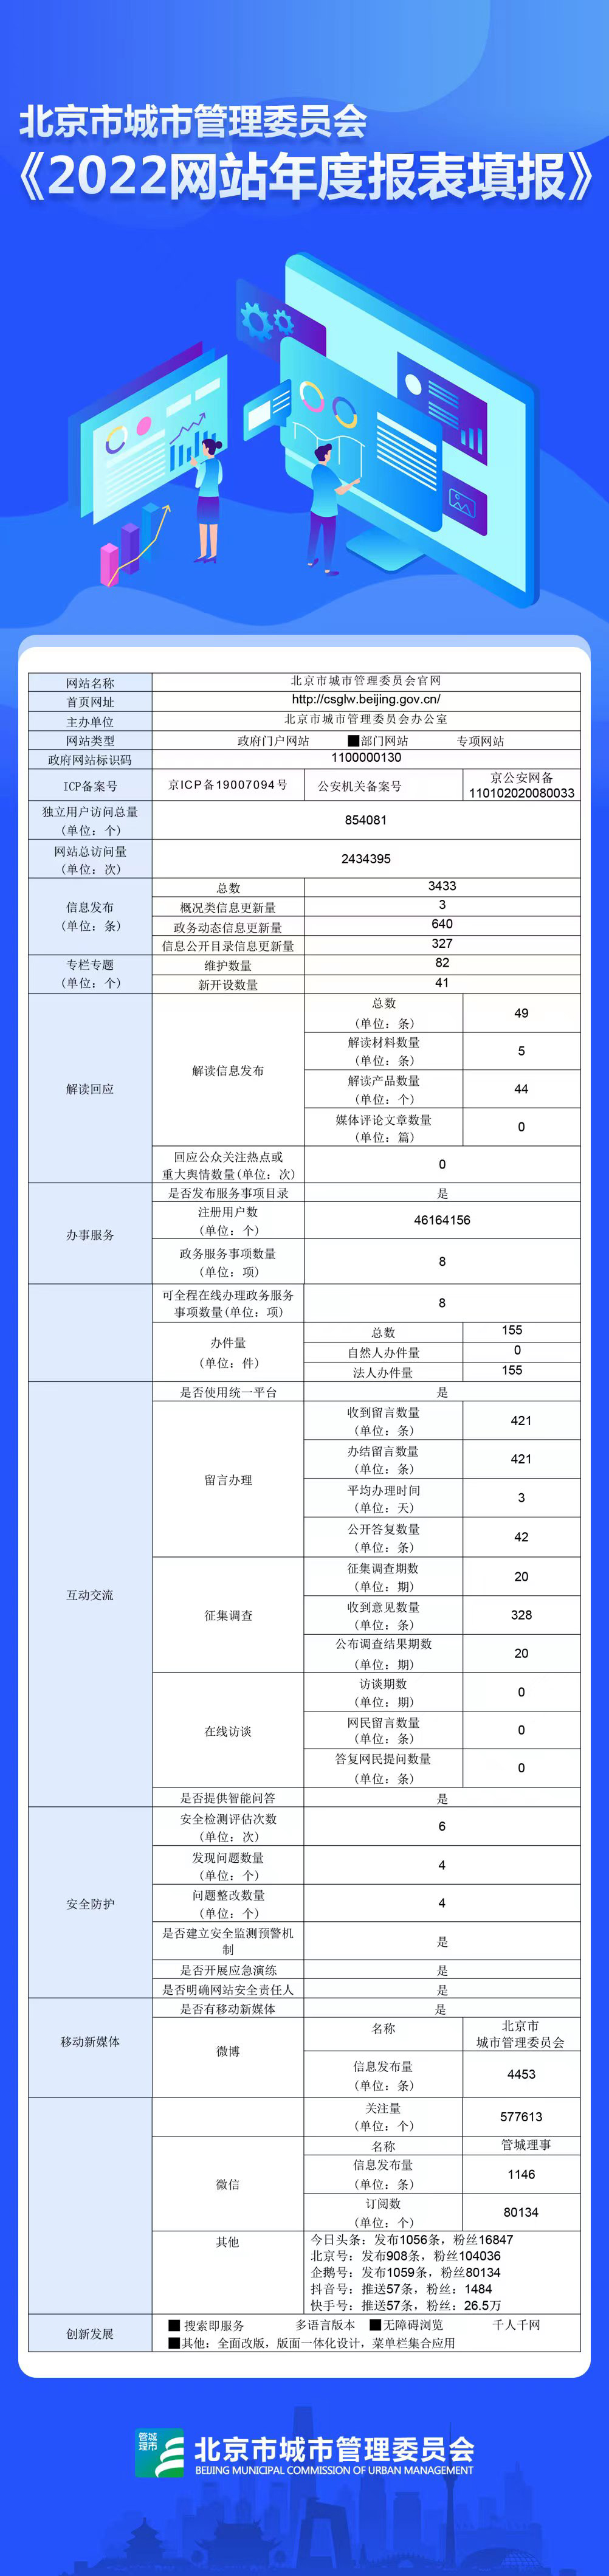 北京市城市管理委員2022年政府網站年度工作報表